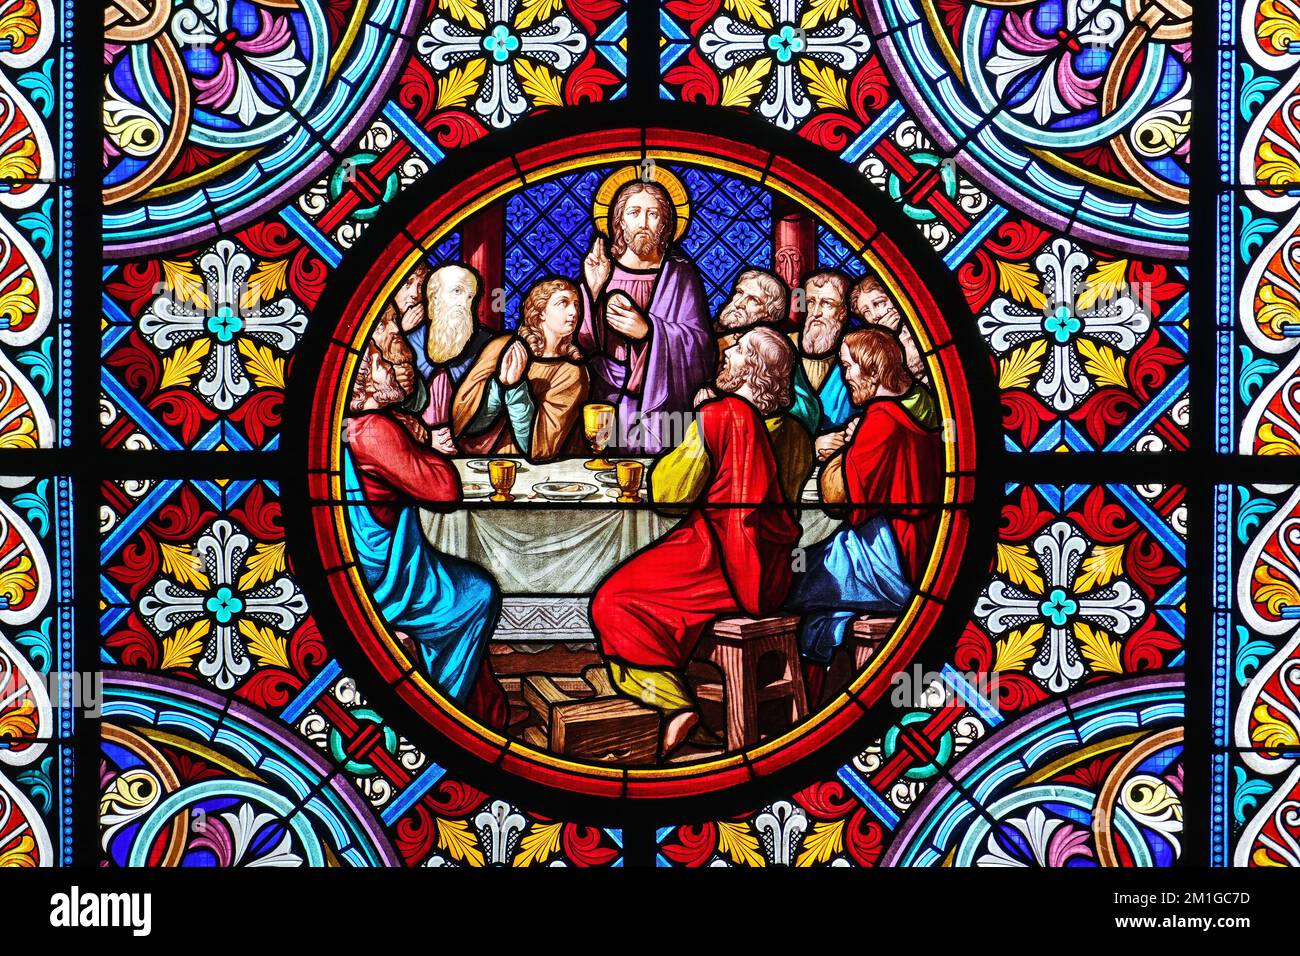 Münster Der Basler Kathedrale. Buntglasfenster. Das letzte Abendmahl ist die letzte Mahlzeit, die Jesus mit seinen Aposteln teilte. Basel, Schweiz - Dezember 20 Stockfoto